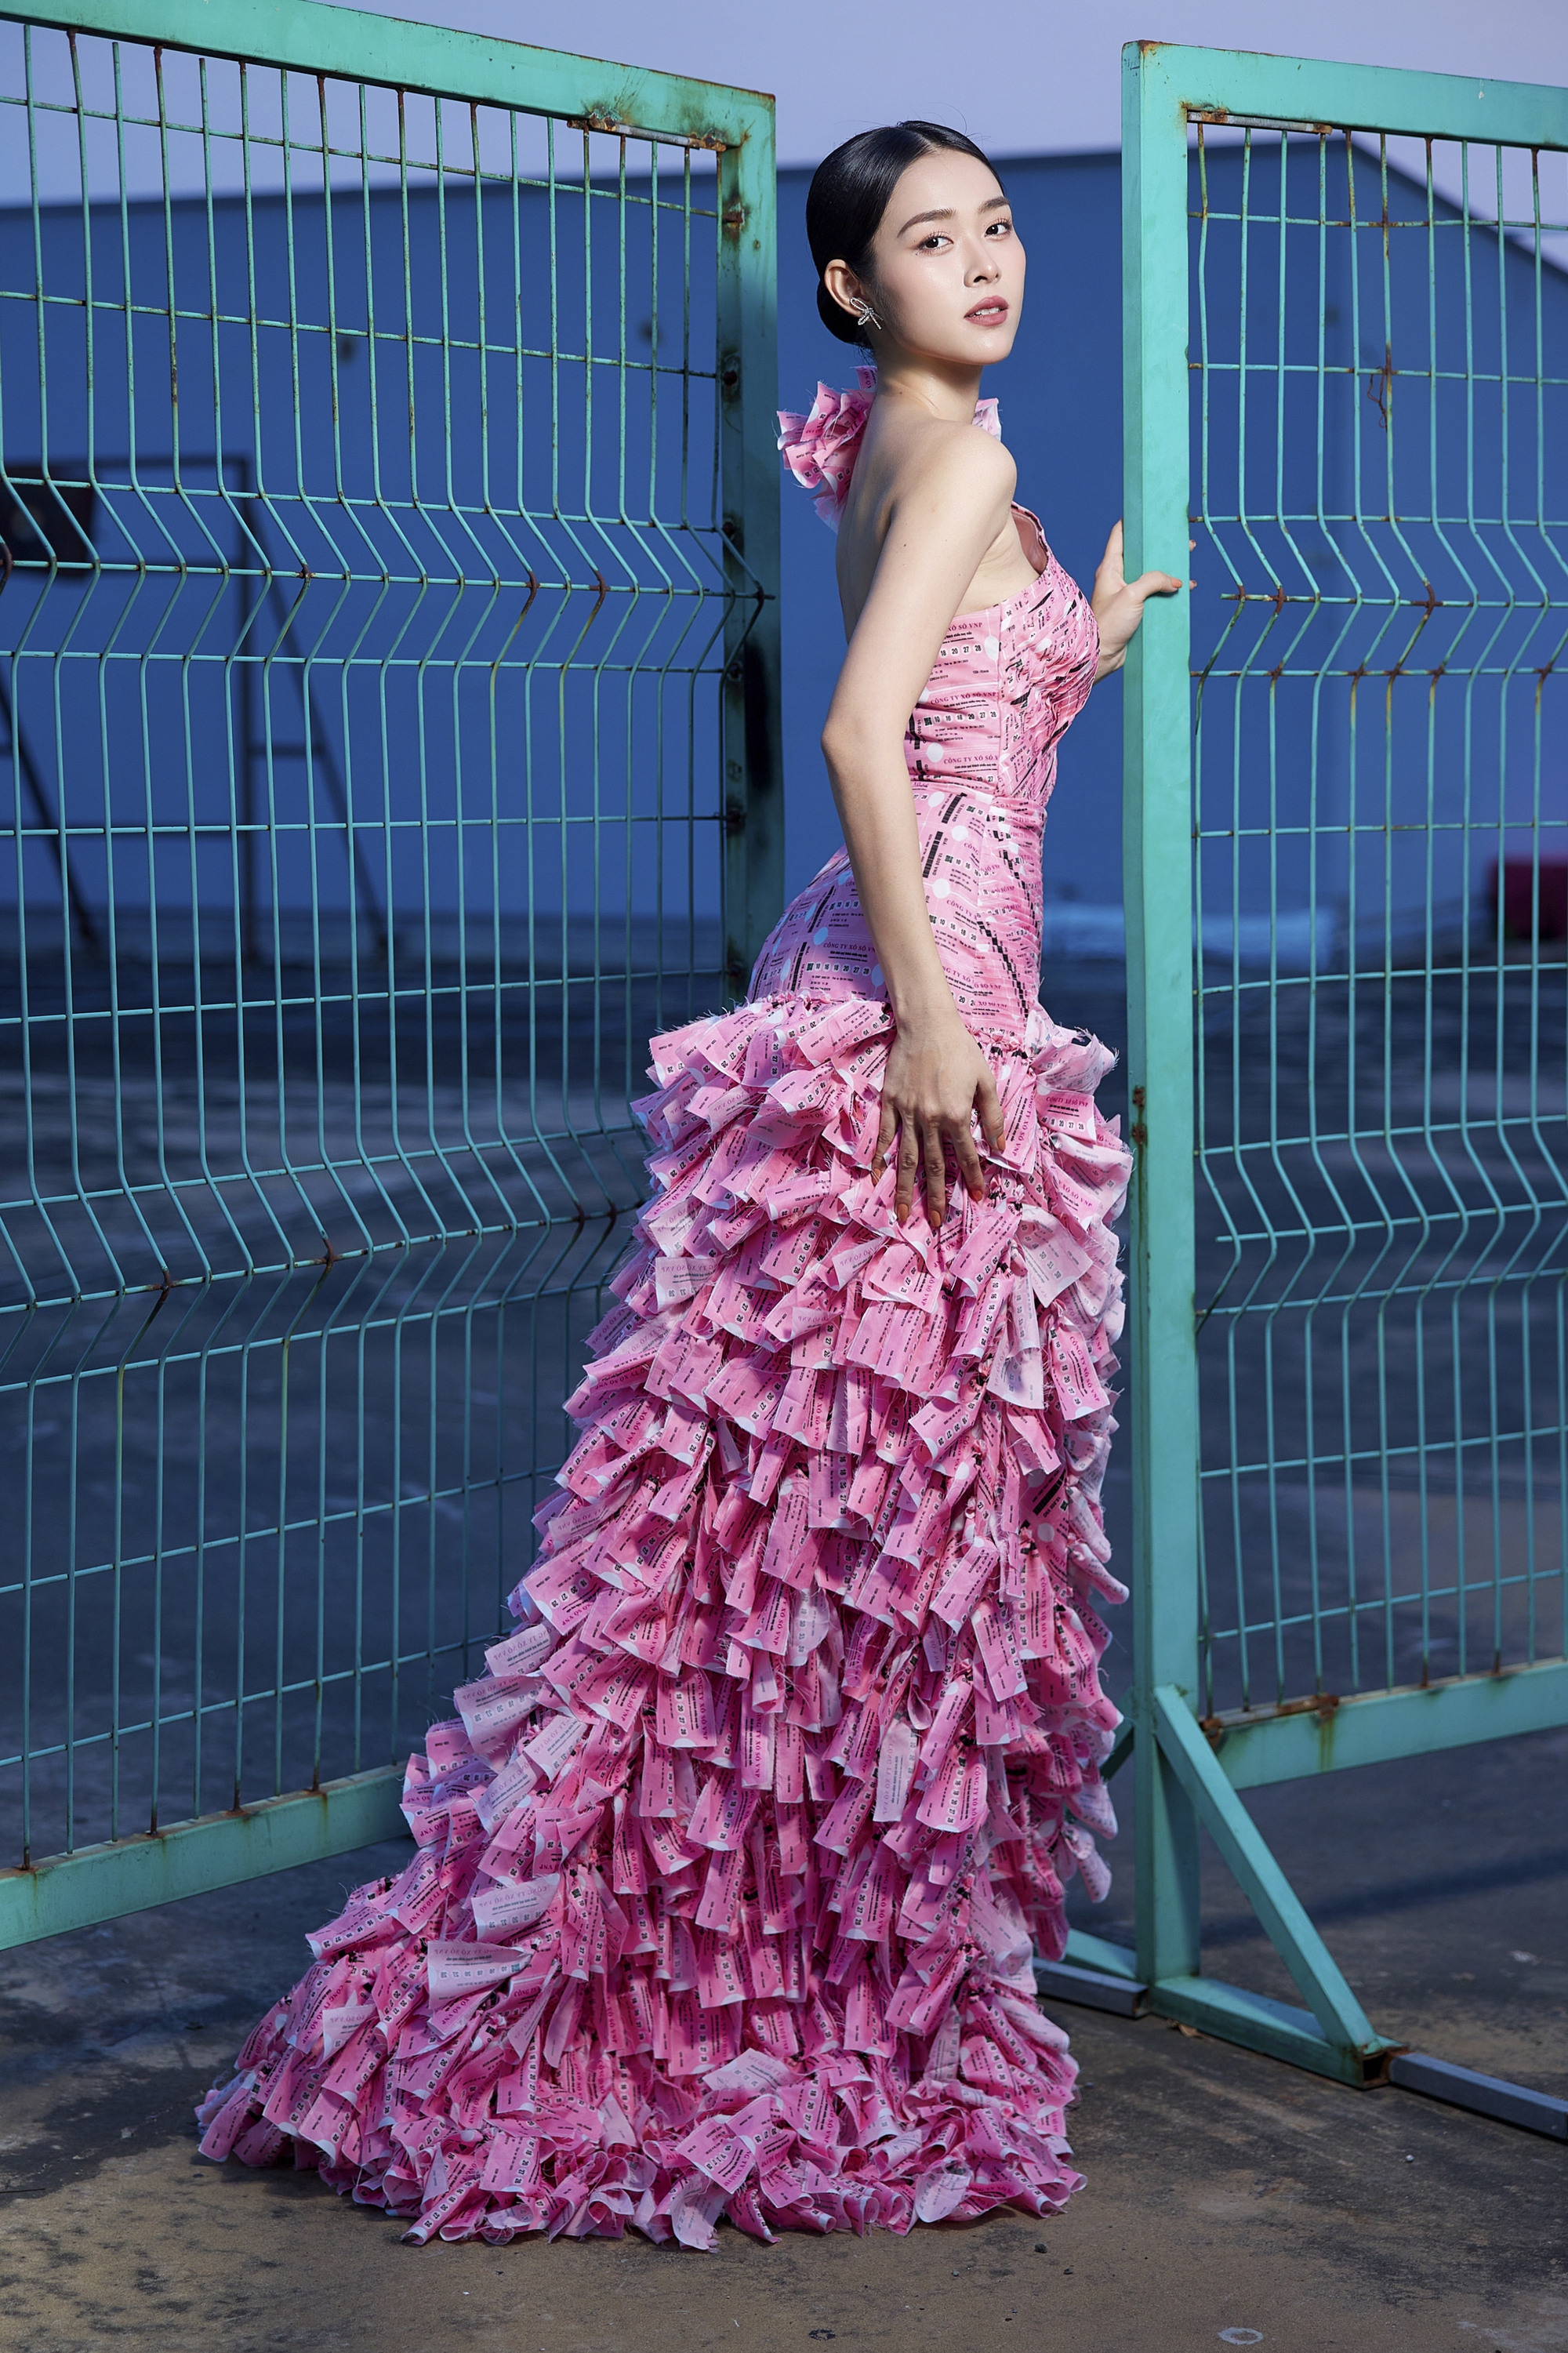 Độc lạ chiếc váy làm từ 2.000 tấm vé số của Diệp Bảo Ngọc - Ảnh 5.